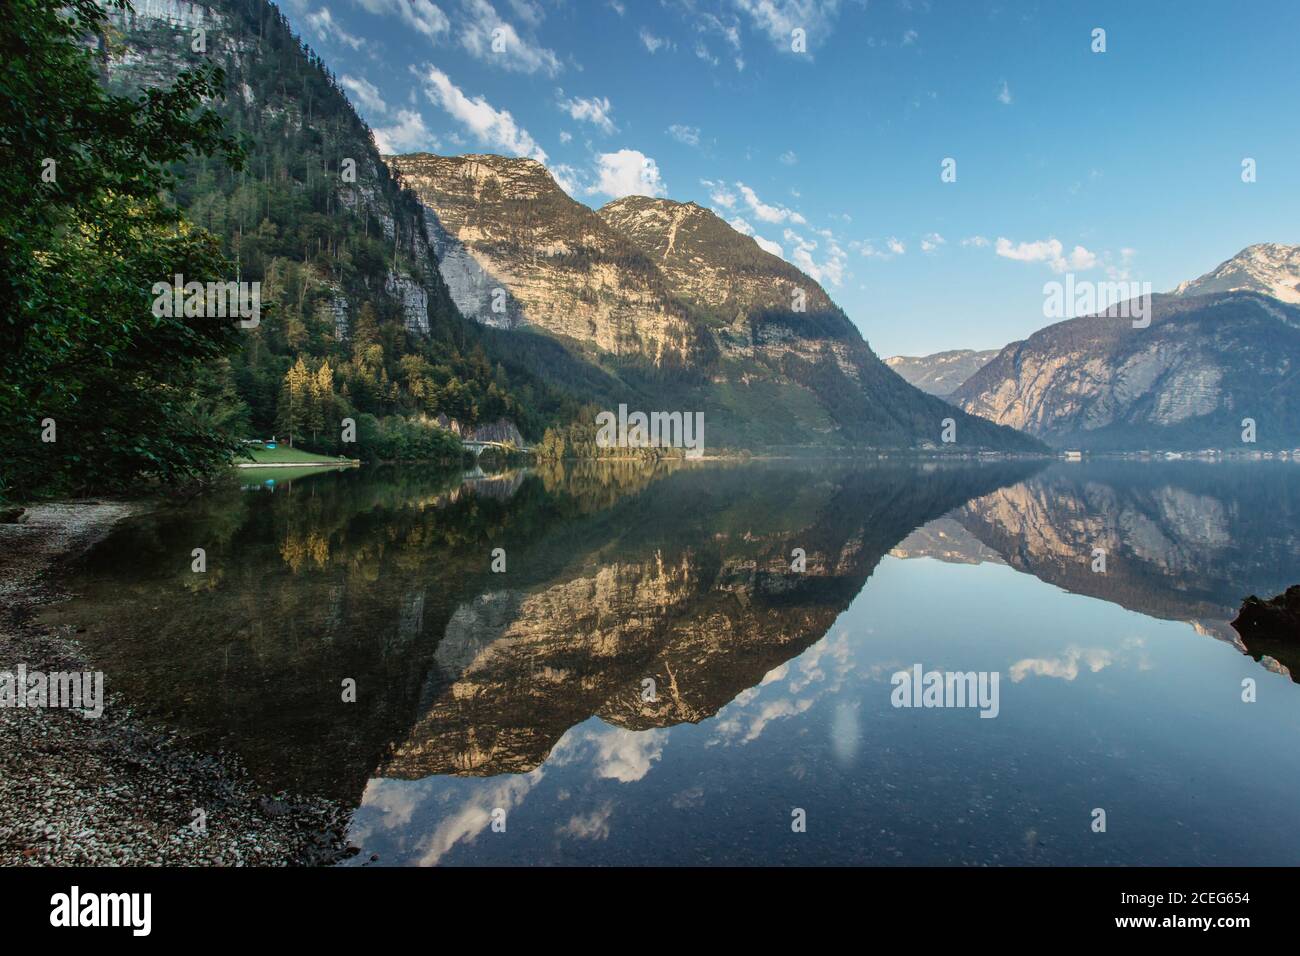 Réflexion miroir à Hallstatter See, Autriche. Été printemps couleurs lac et montagne au lever du soleil dans les Alpes autrichiennes.beau paysage paisible de la nature, tur Banque D'Images